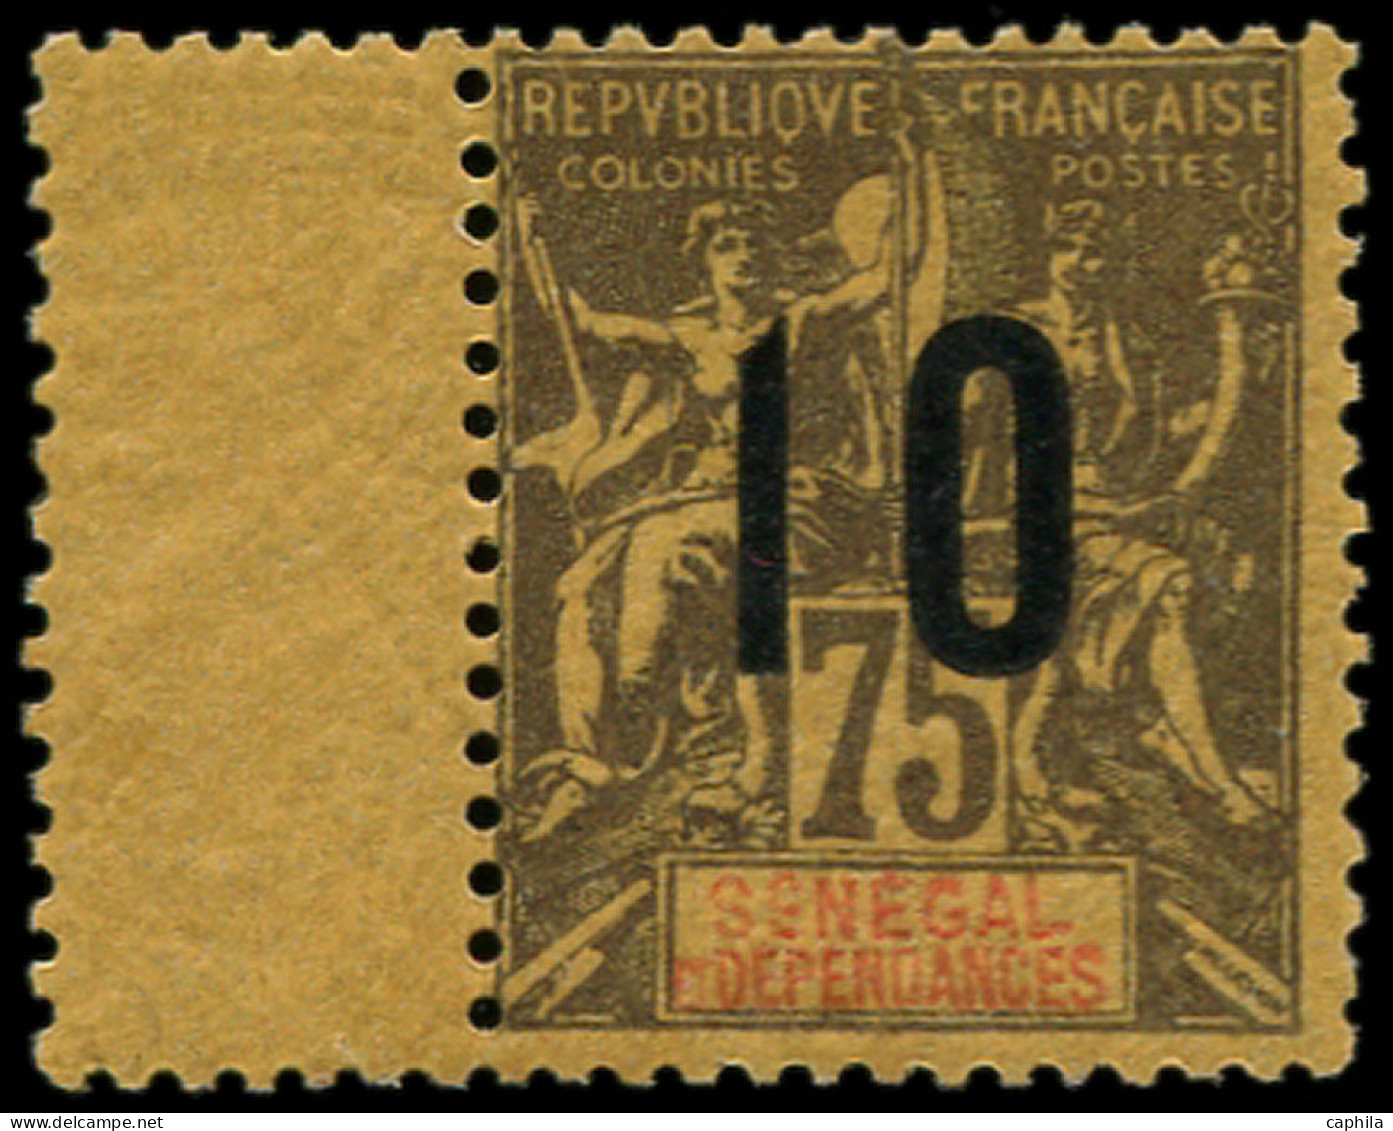 * SENEGAL - Poste - 52A, Chiffres Espacés: 10 S. 75c. - Unused Stamps